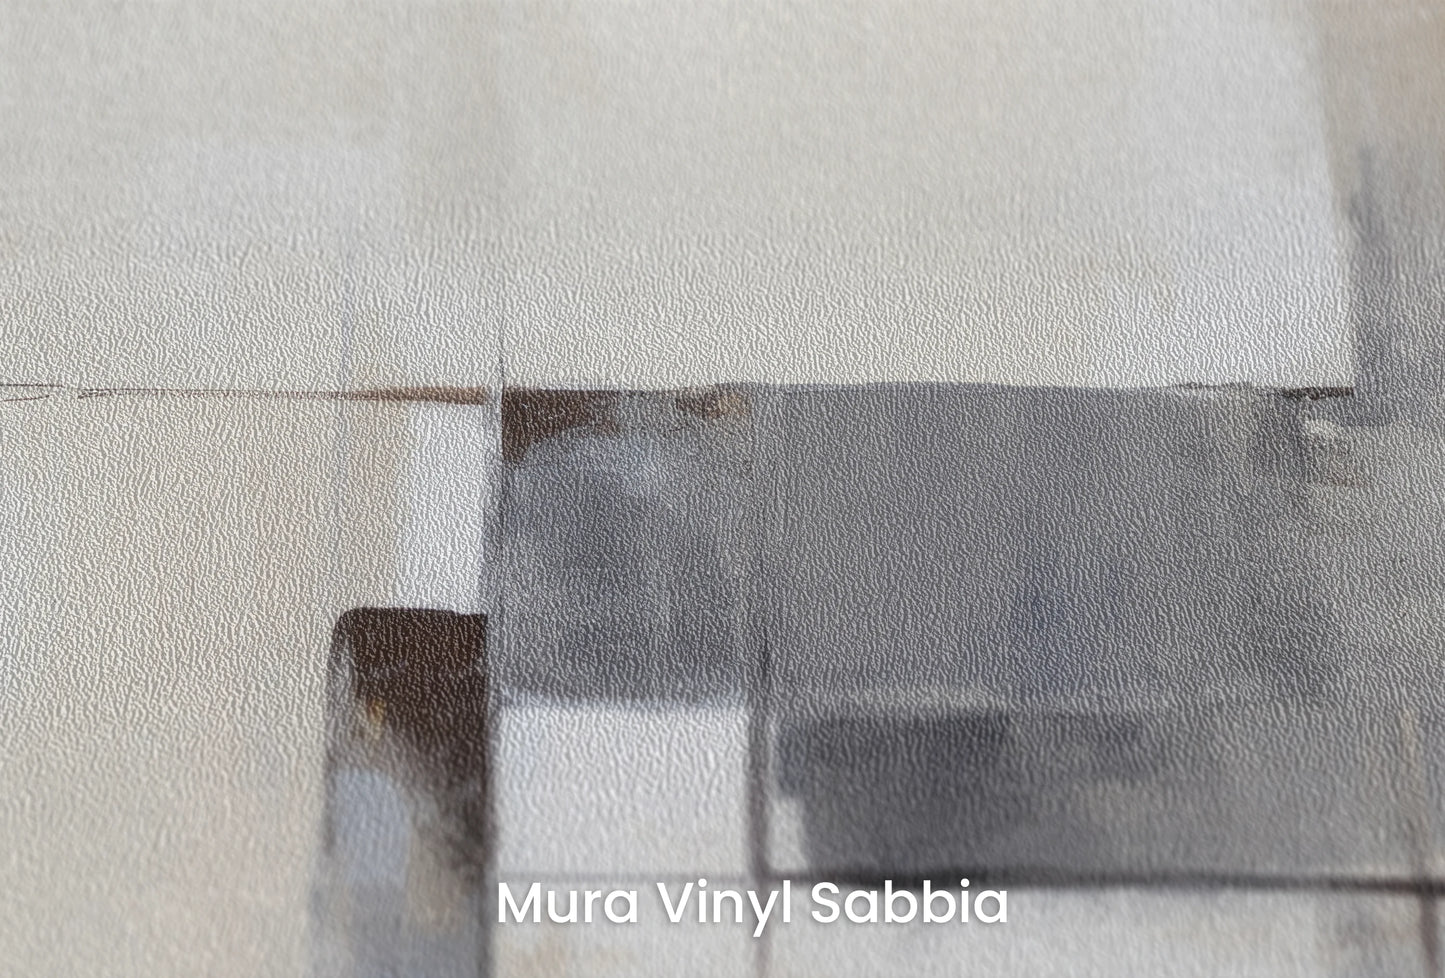 Zbliżenie na artystyczną fototapetę o nazwie Sleek Intersection na podłożu Mura Vinyl Sabbia struktura grubego ziarna piasku.